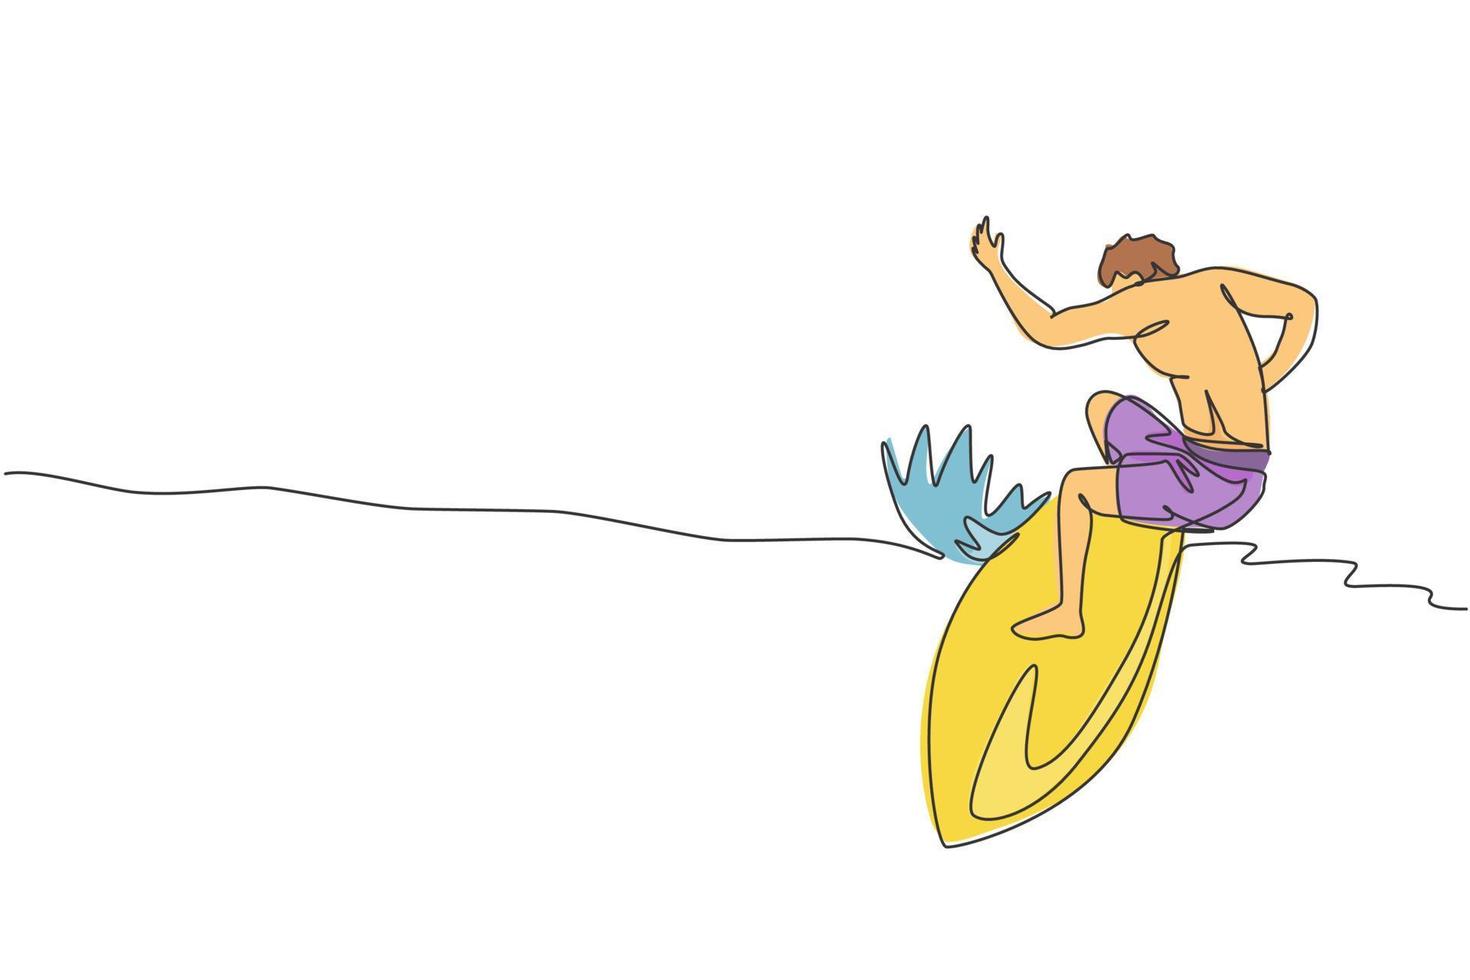 un dibujo de una sola línea de un joven surfista deportivo montado en un barril de grandes olas en la ilustración vectorial del paraíso de la playa de surf. concepto de estilo de vida de deportes acuáticos extremos. diseño moderno de dibujo de línea continua vector